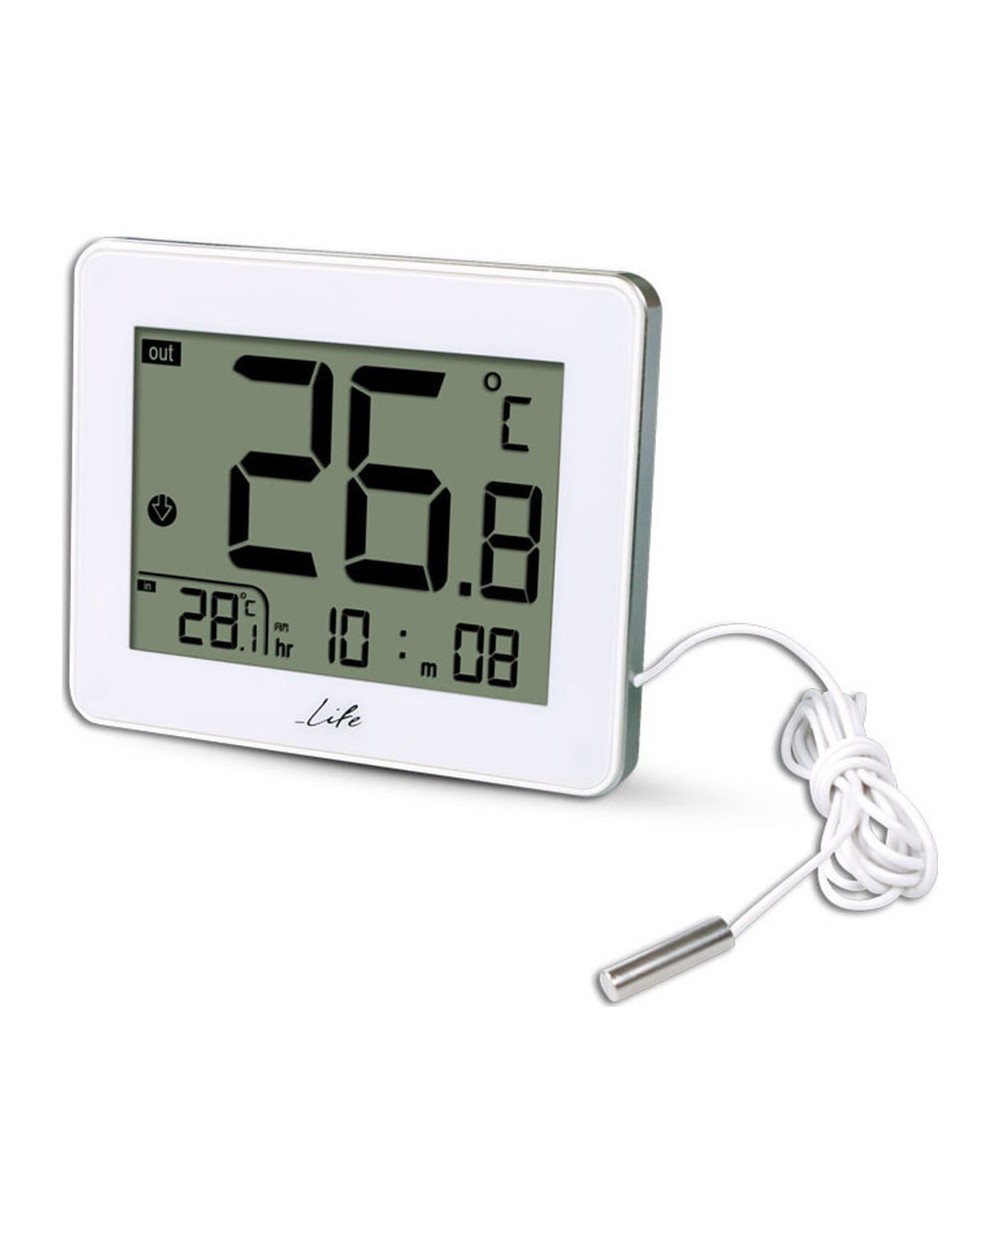 Ψηφιακό θερμόμετρο  θερμοκρασίας, με ενσύρματο αισθητήρα και ρολόι LIFE CORDY , σε λευκό